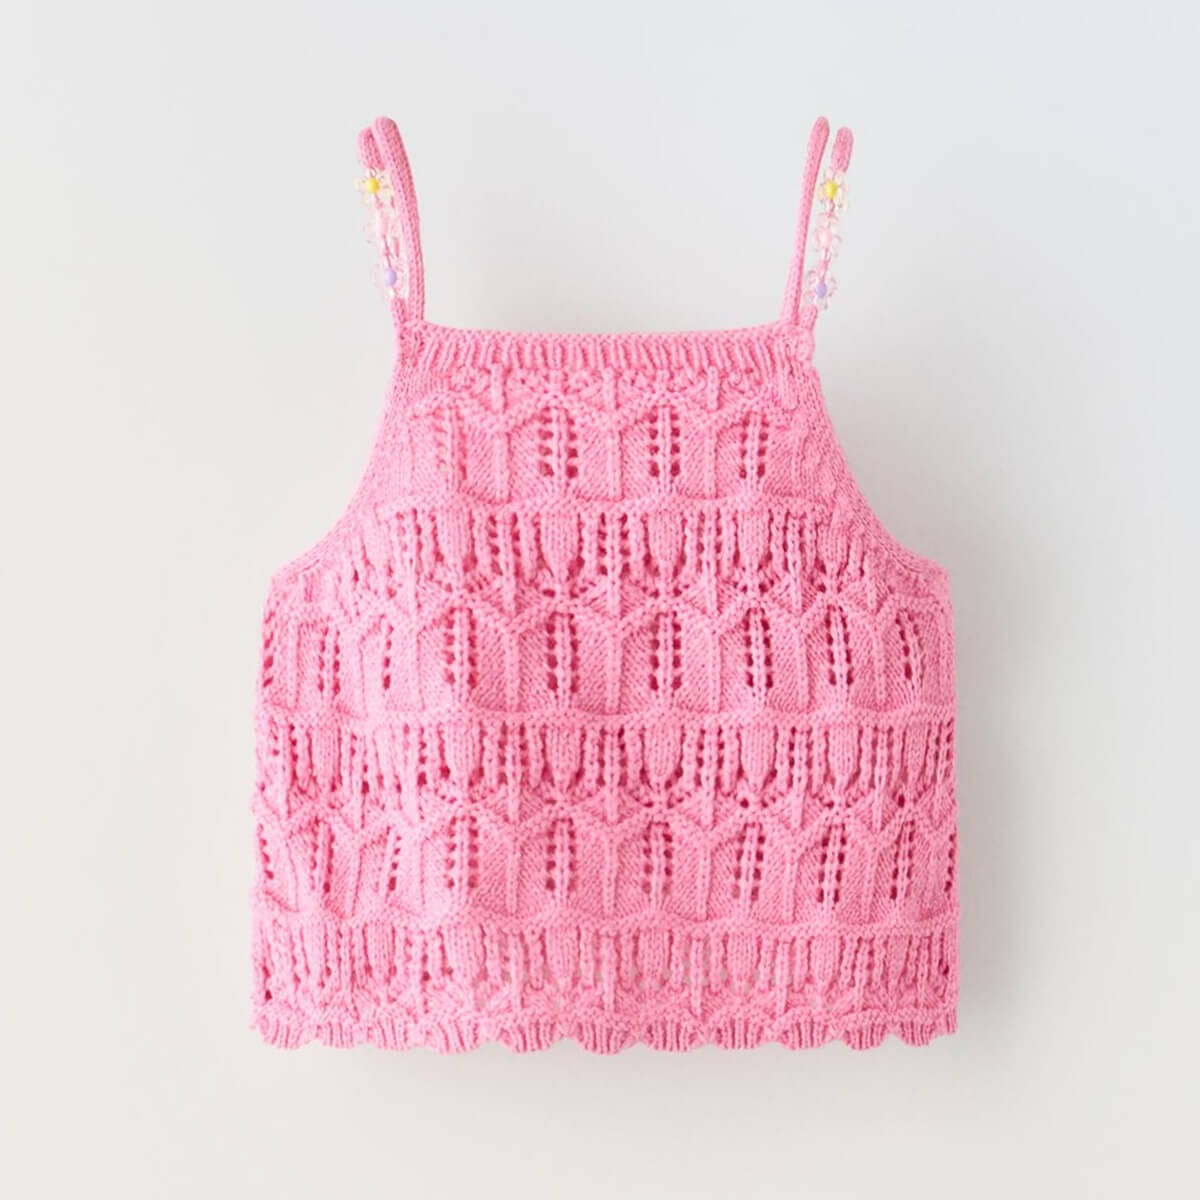 Топ Zara Knit With Floral Beads, розовый топ zara floral knit бежевый